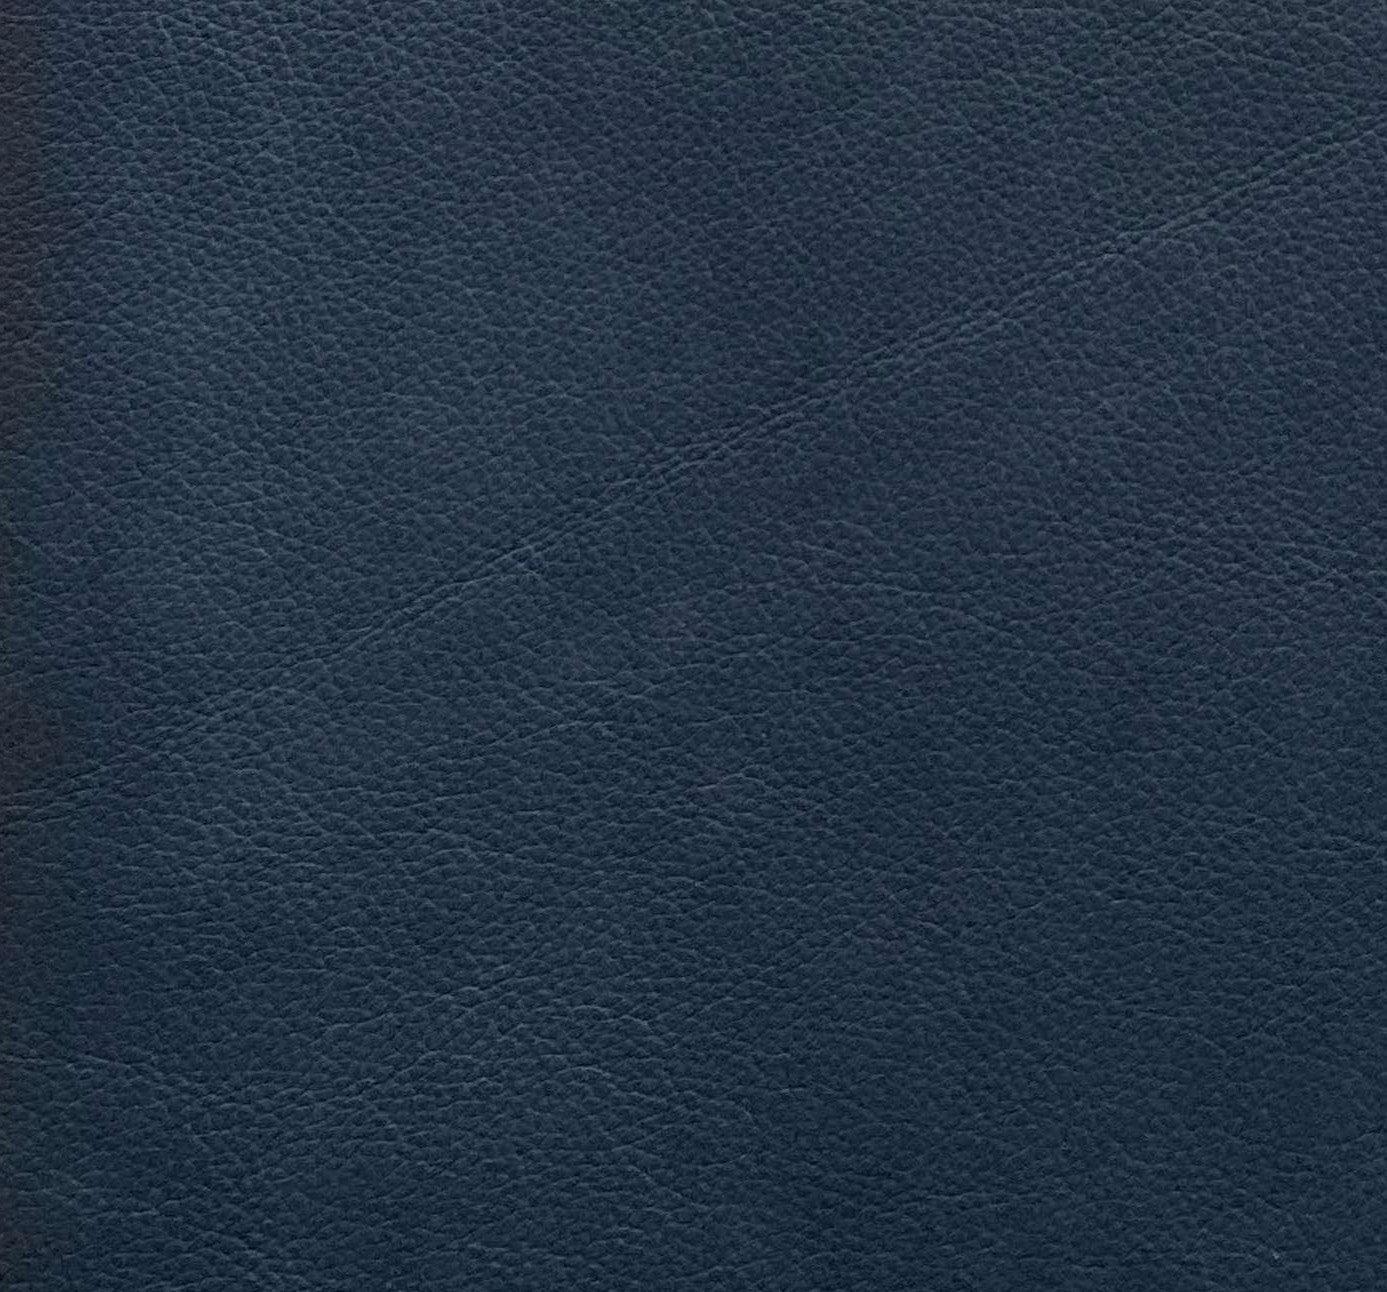 Leather Sample-Eugene Dusk Grade 3 Samples Omnia 